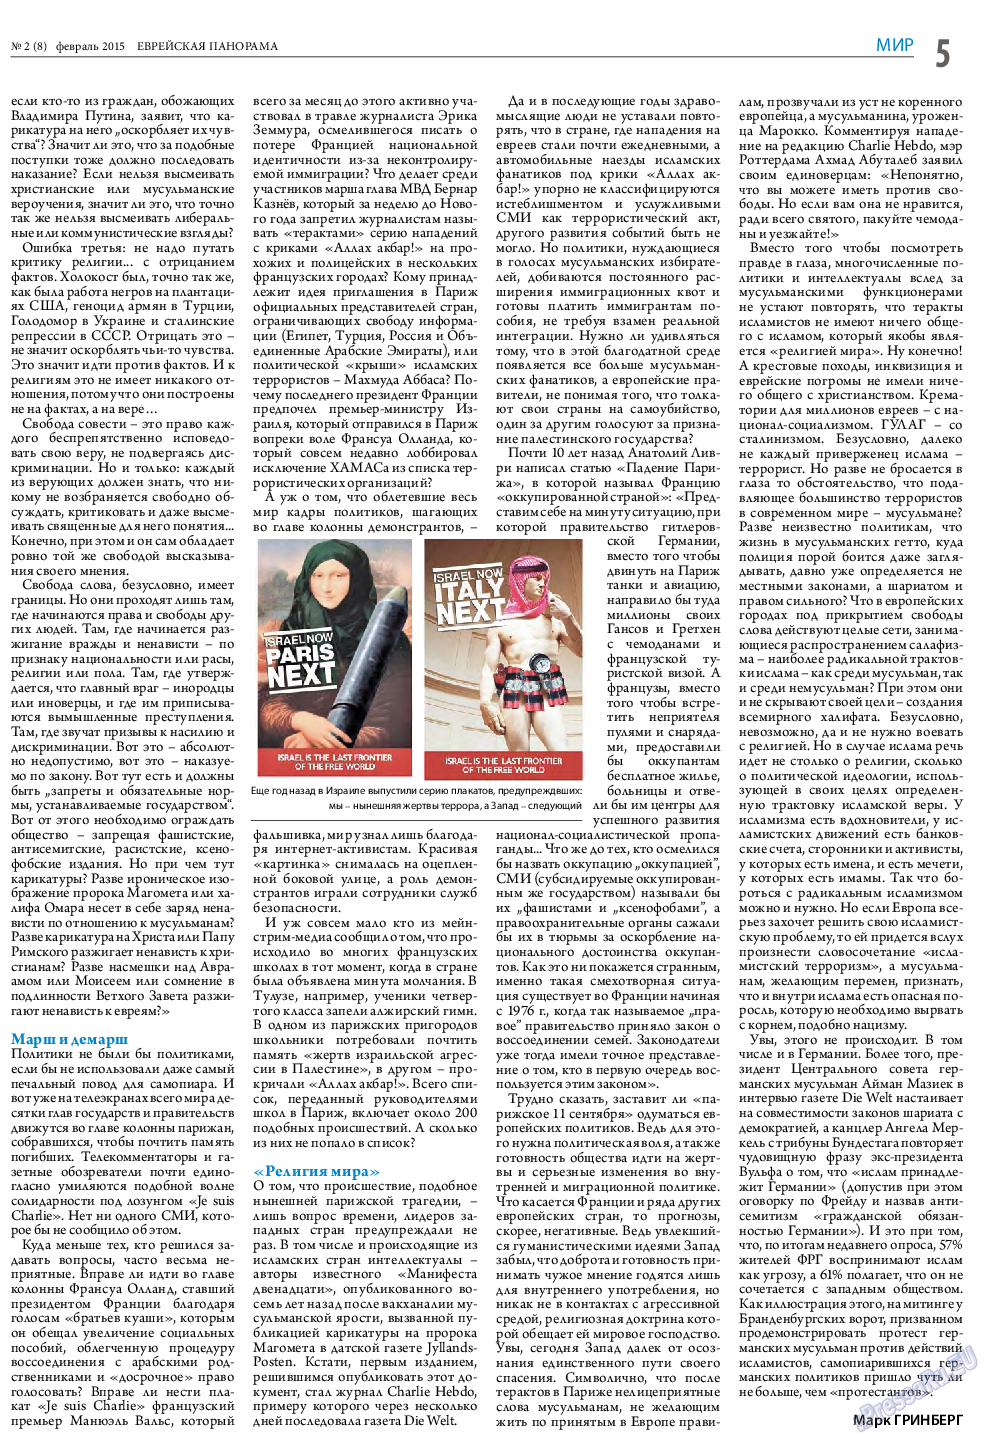 Еврейская панорама (газета). 2015 год, номер 2, стр. 5